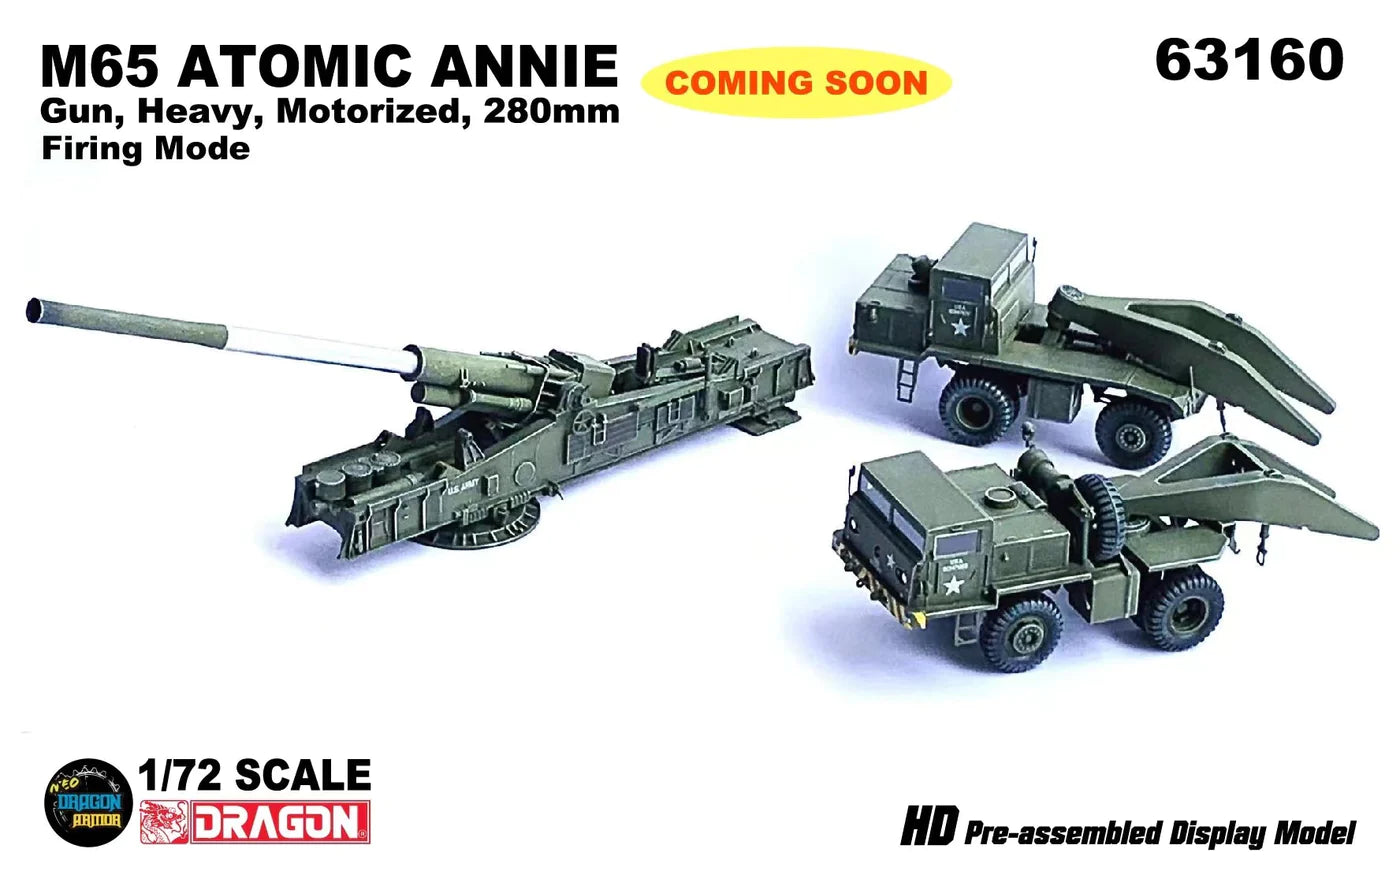 Dragon Armor 1/72 US M65 280mm Atomic Annie Firing Mode 63160